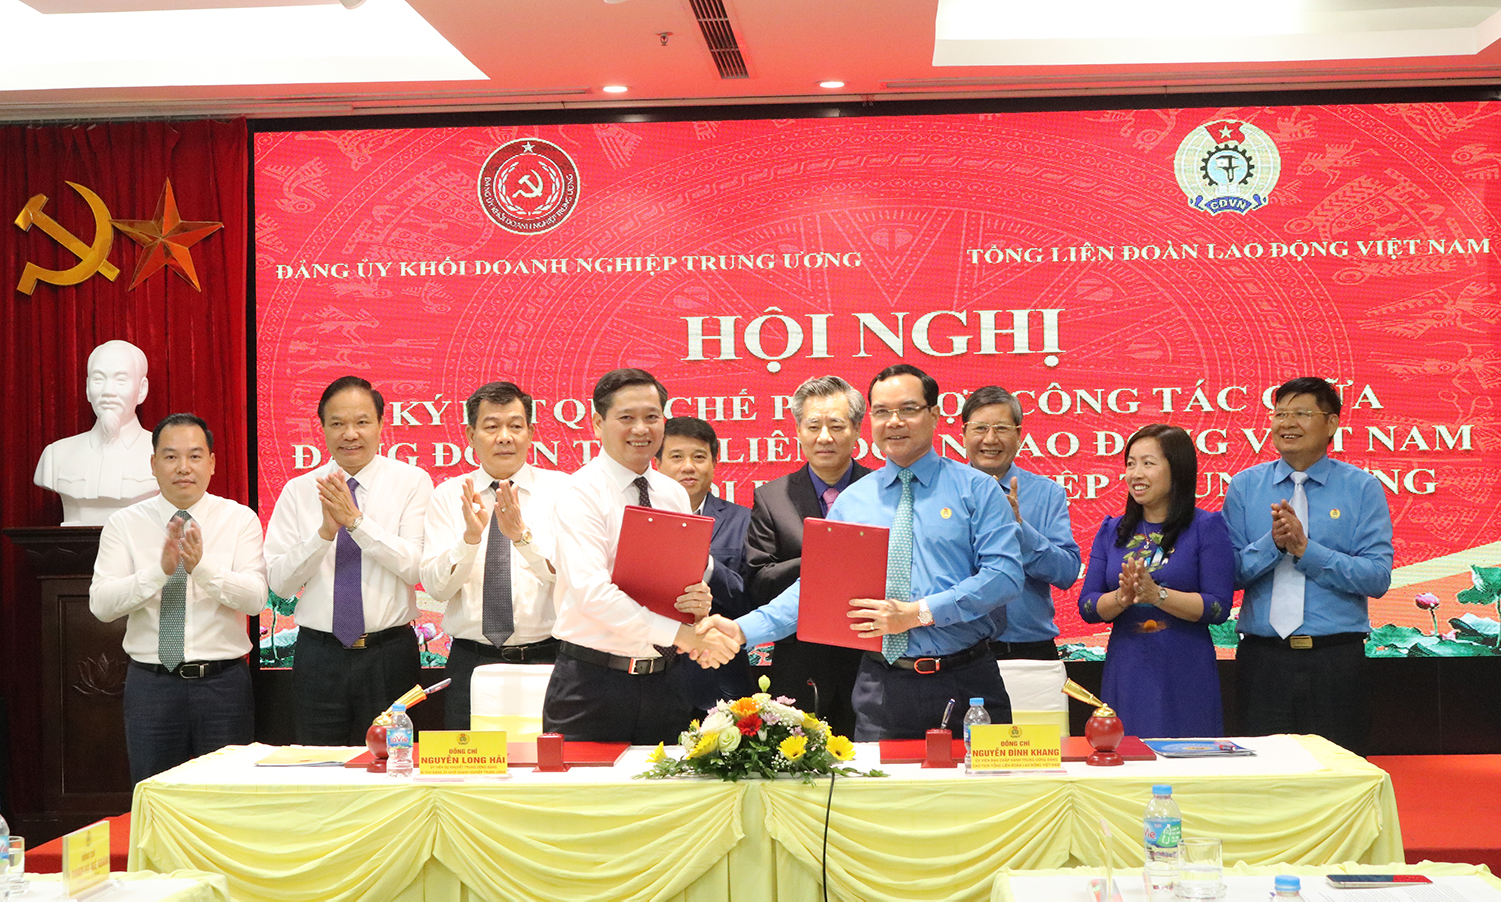 ký kết Quy chế phối hợp giữa Đảng uỷ Khối Doanh nghiệp Trung ương với Đảng đoàn Tổng Liên đoàn Lao động Việt Nam.